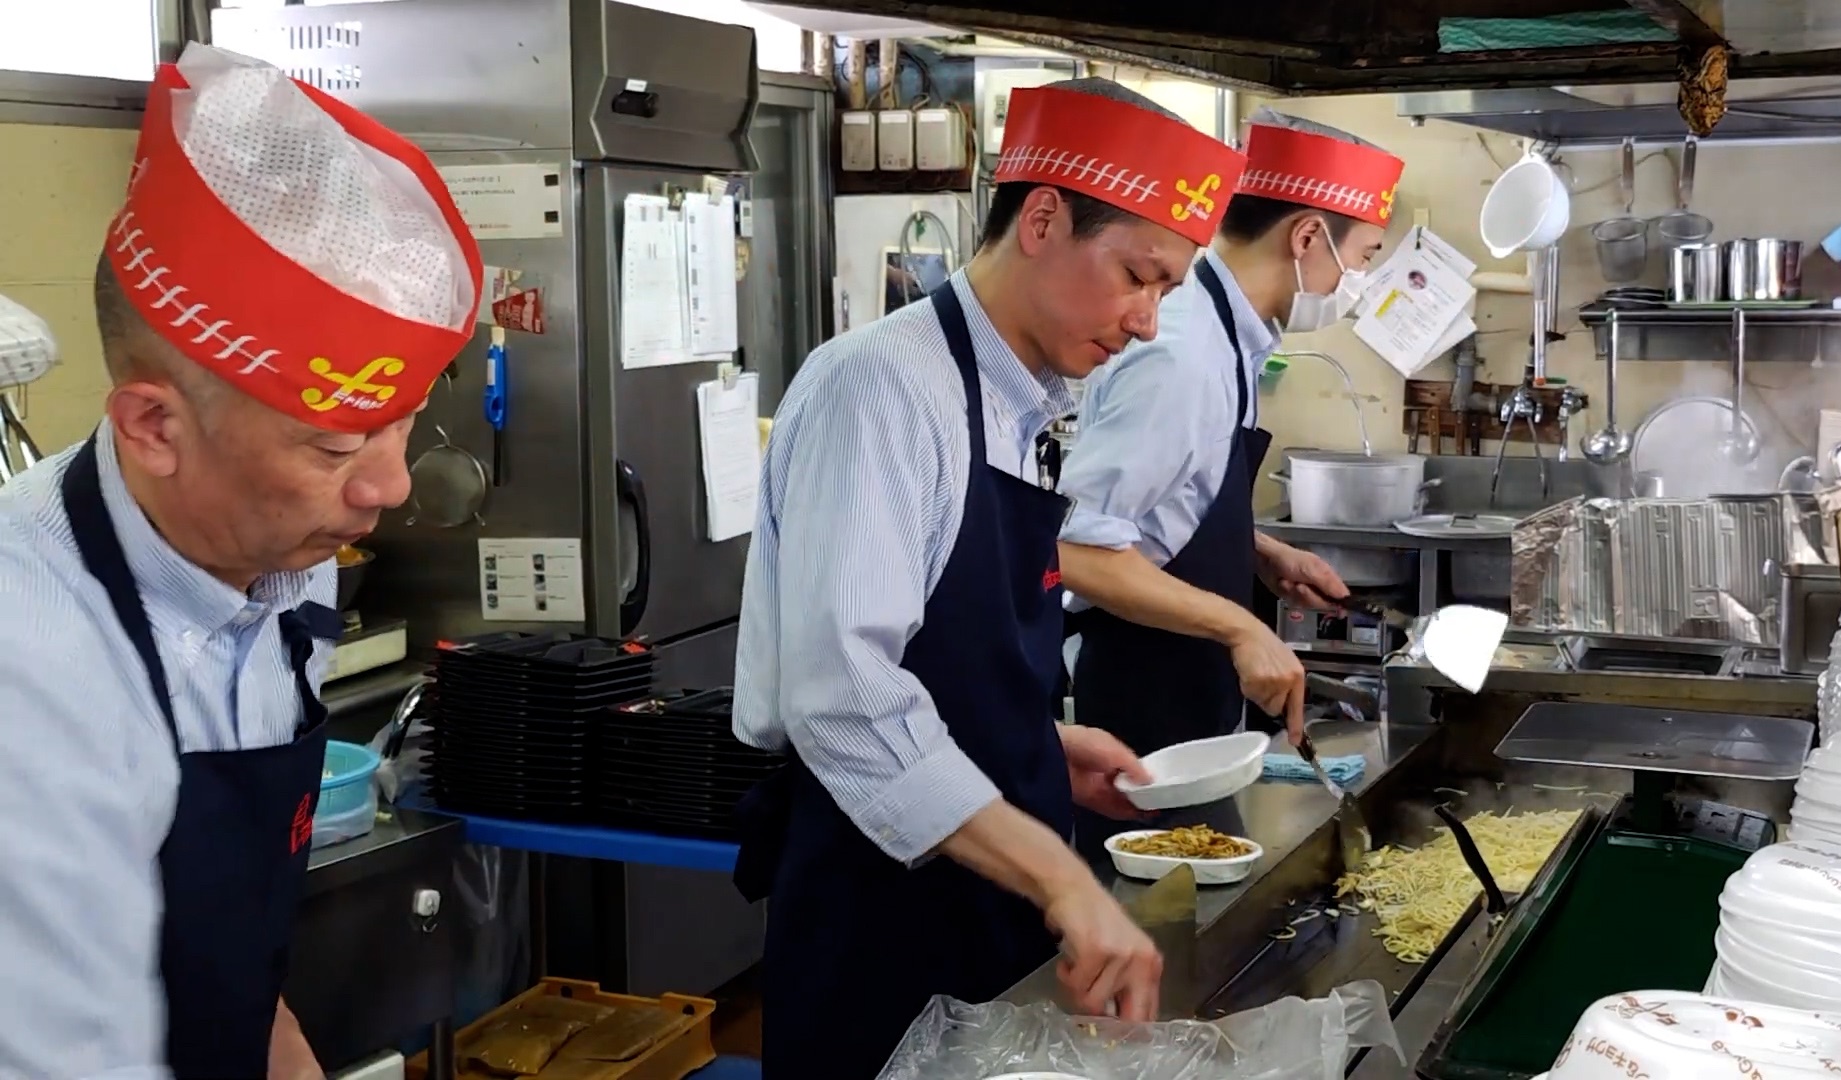 【日本美食】这家免下车快餐店一直在为车里的顾客提供美味的快餐